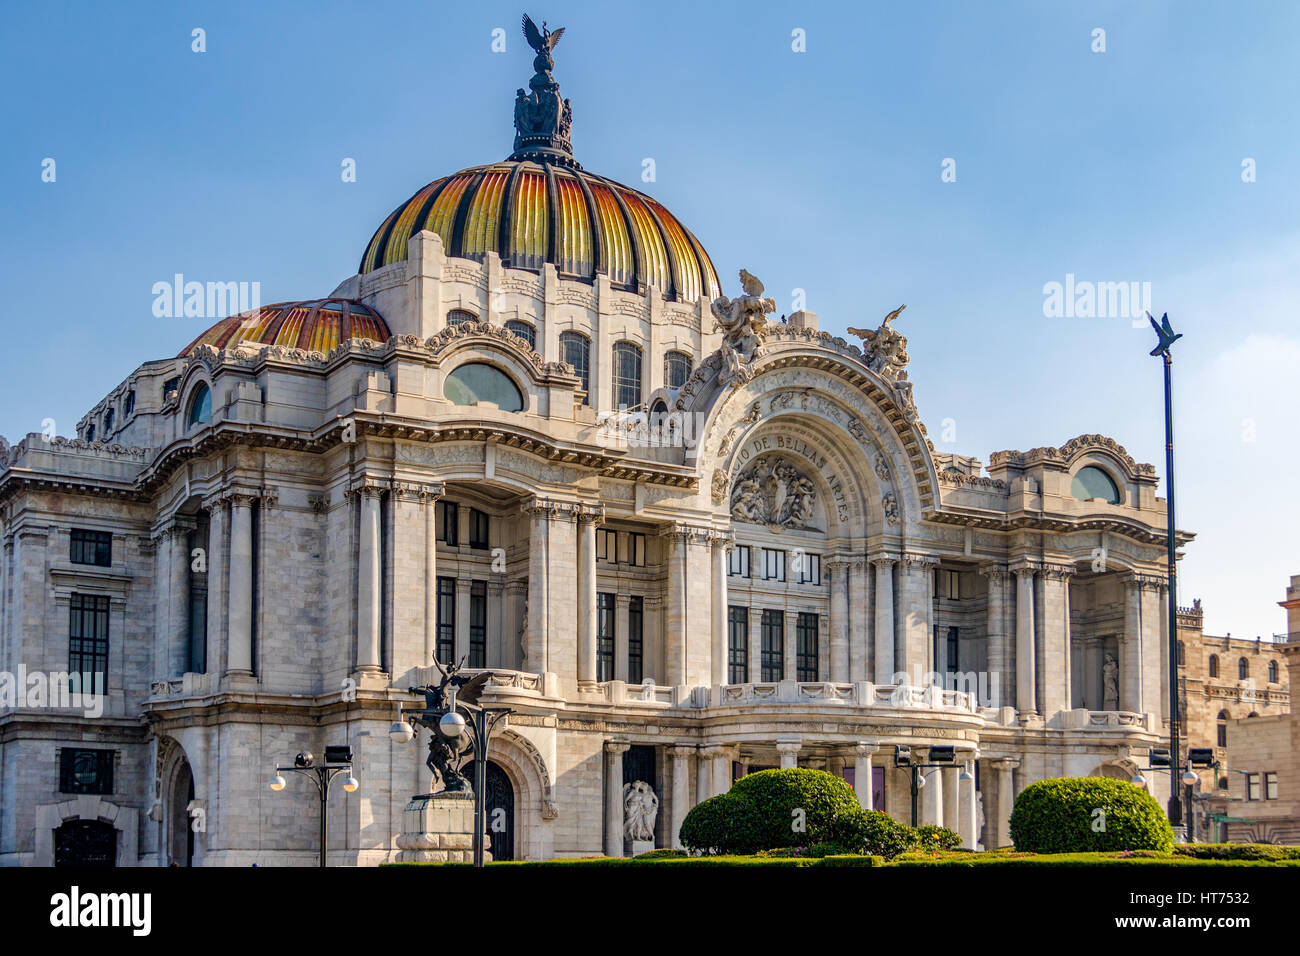 Palacio de Bellas Artes (Fine Arts Palace) - Mexico City, Mexico Stock Photo